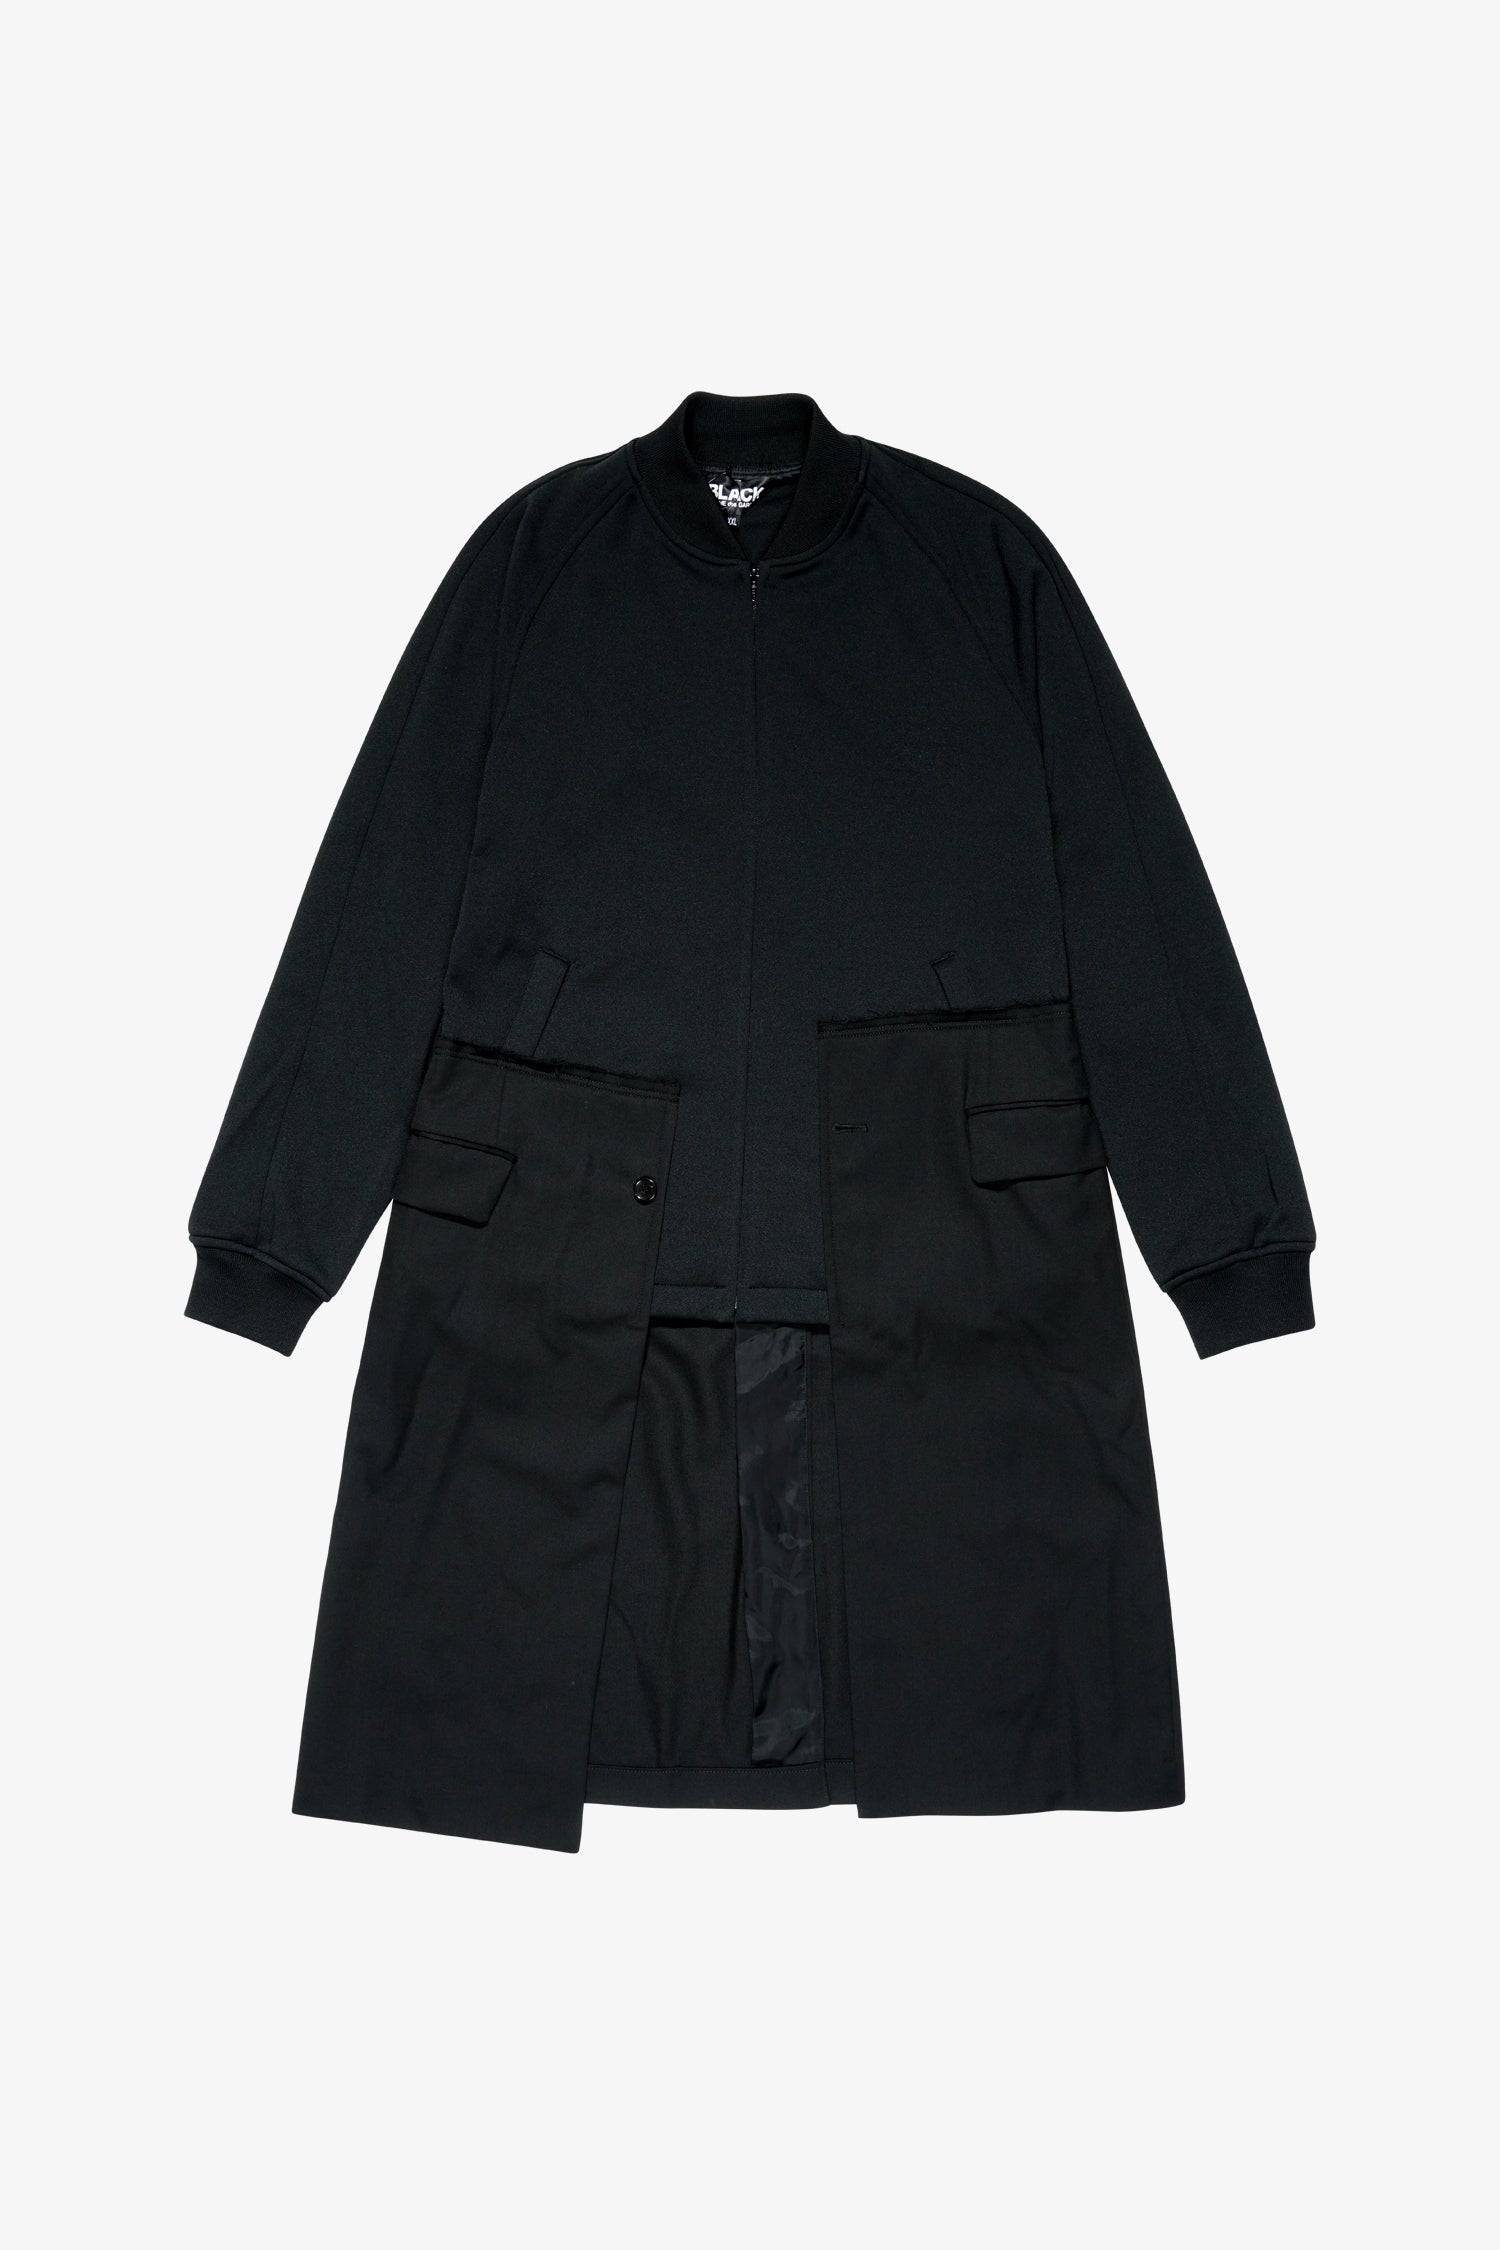 Selectshop FRAME - COMME DES GARCONS BLACK Deconstructed Coat Jacket Outerwear Dubai